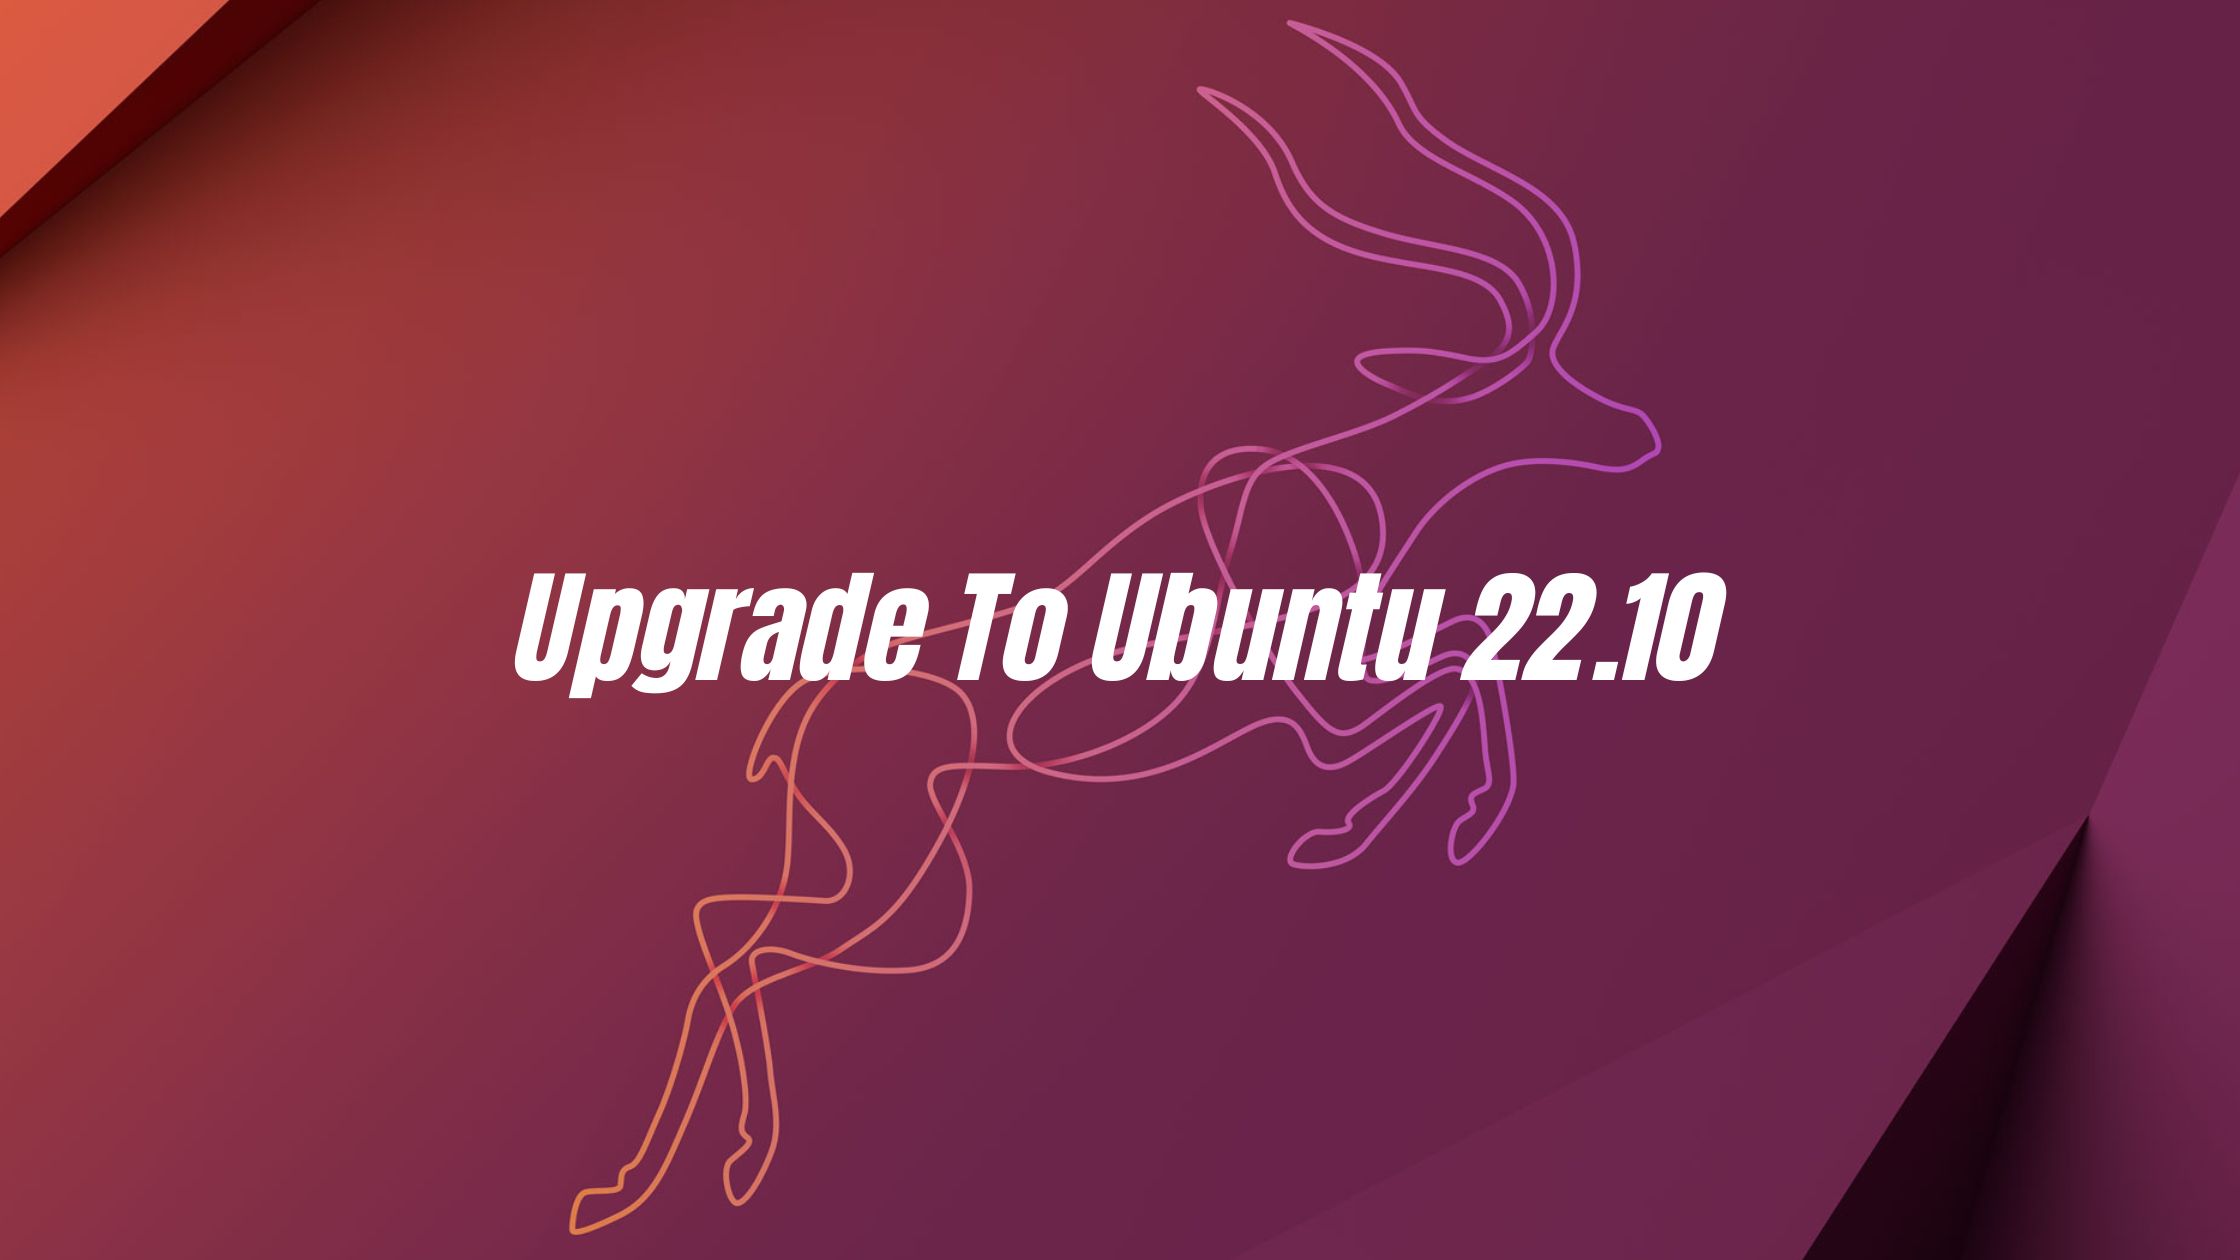 How To Upgrade To Ubuntu 22.10 ‘Kinetic Kudu’